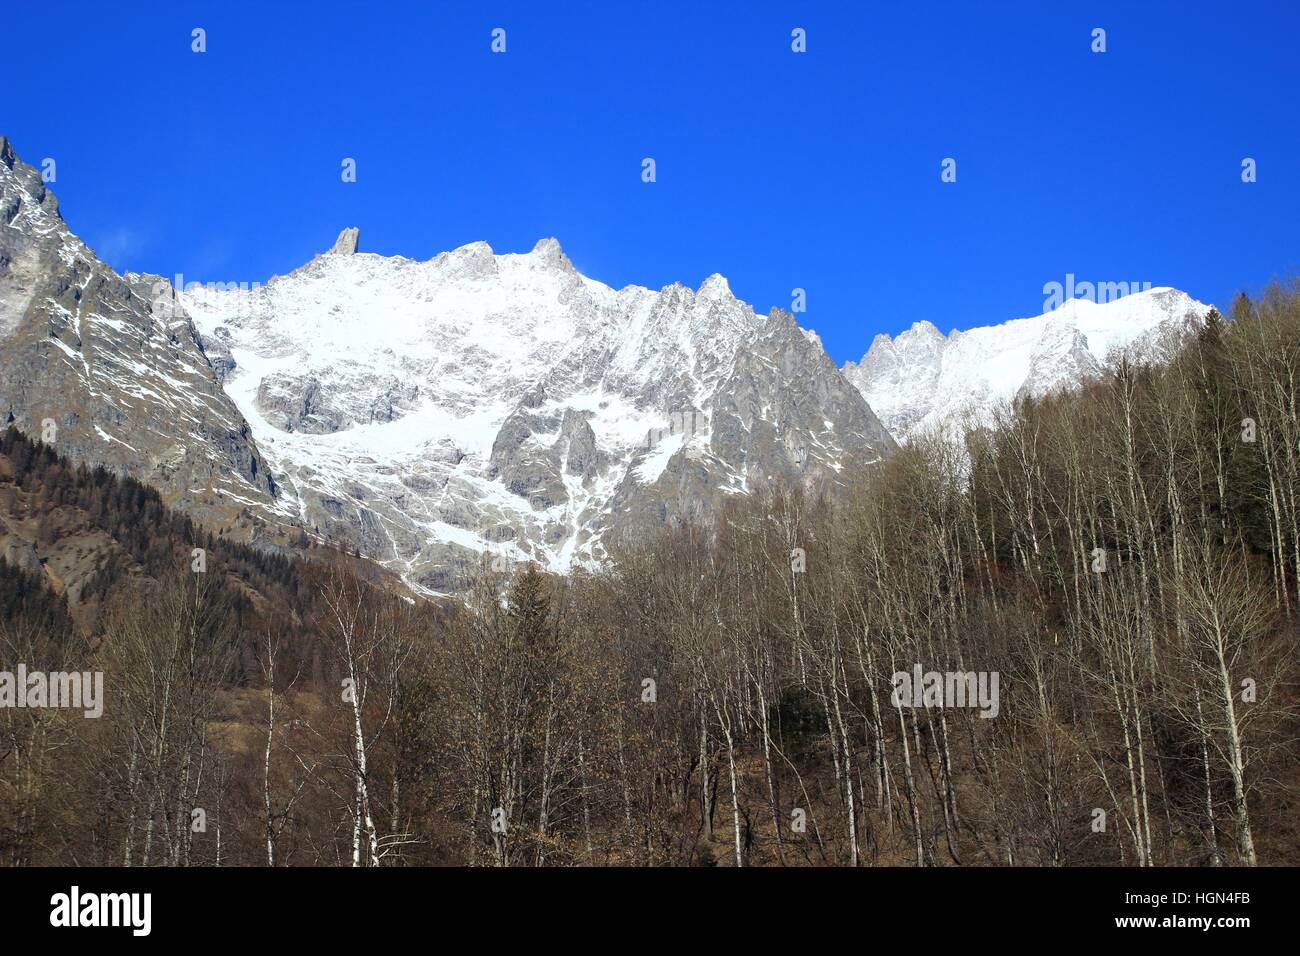 Grand Jorasses picco nel massiccio del Monte Bianco sul confine Italia-francia Foto Stock